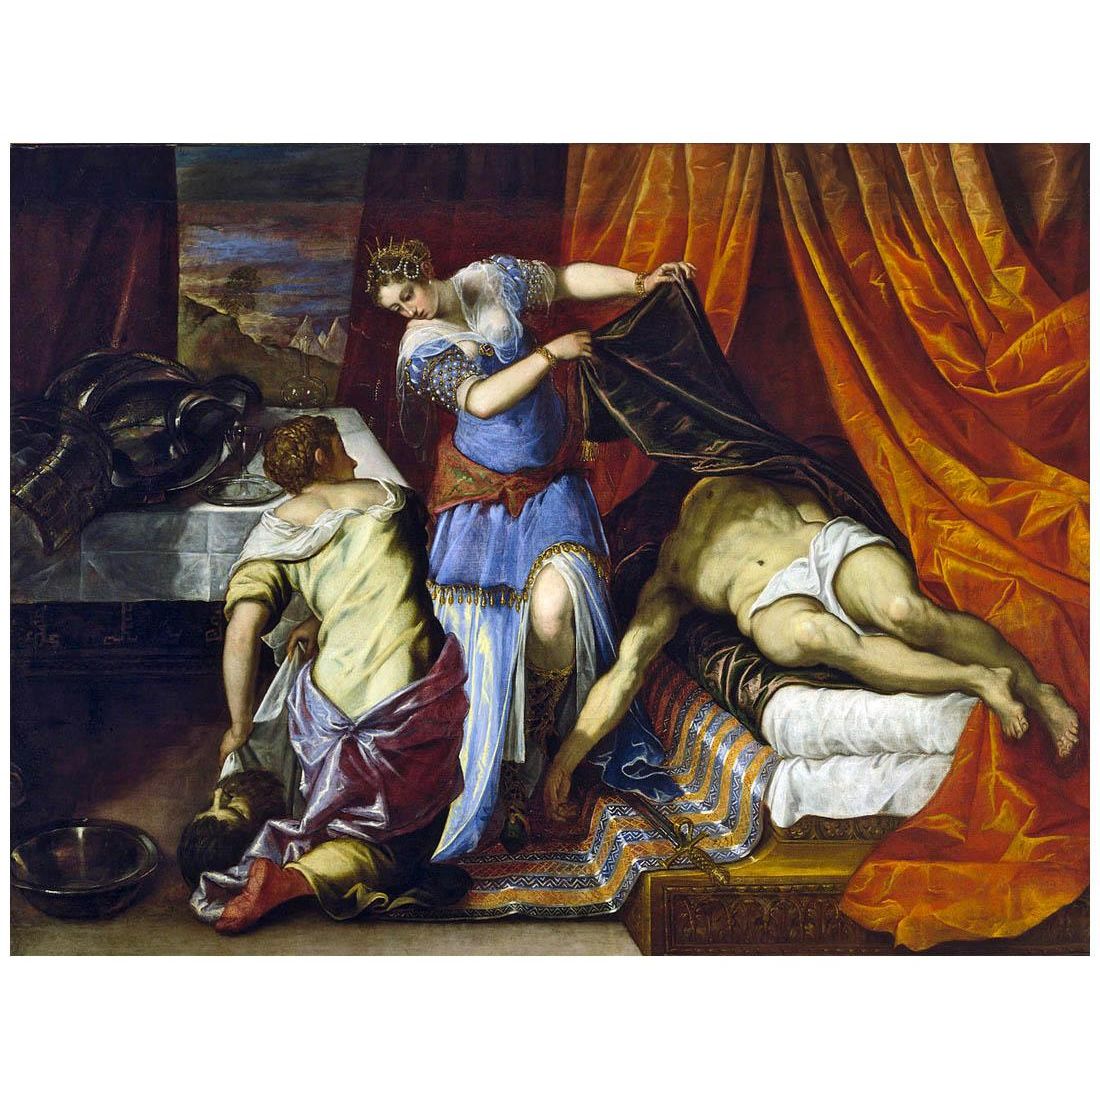 Tintoretto. Giuditta e Oloferne. 1577. Prado, Madrid